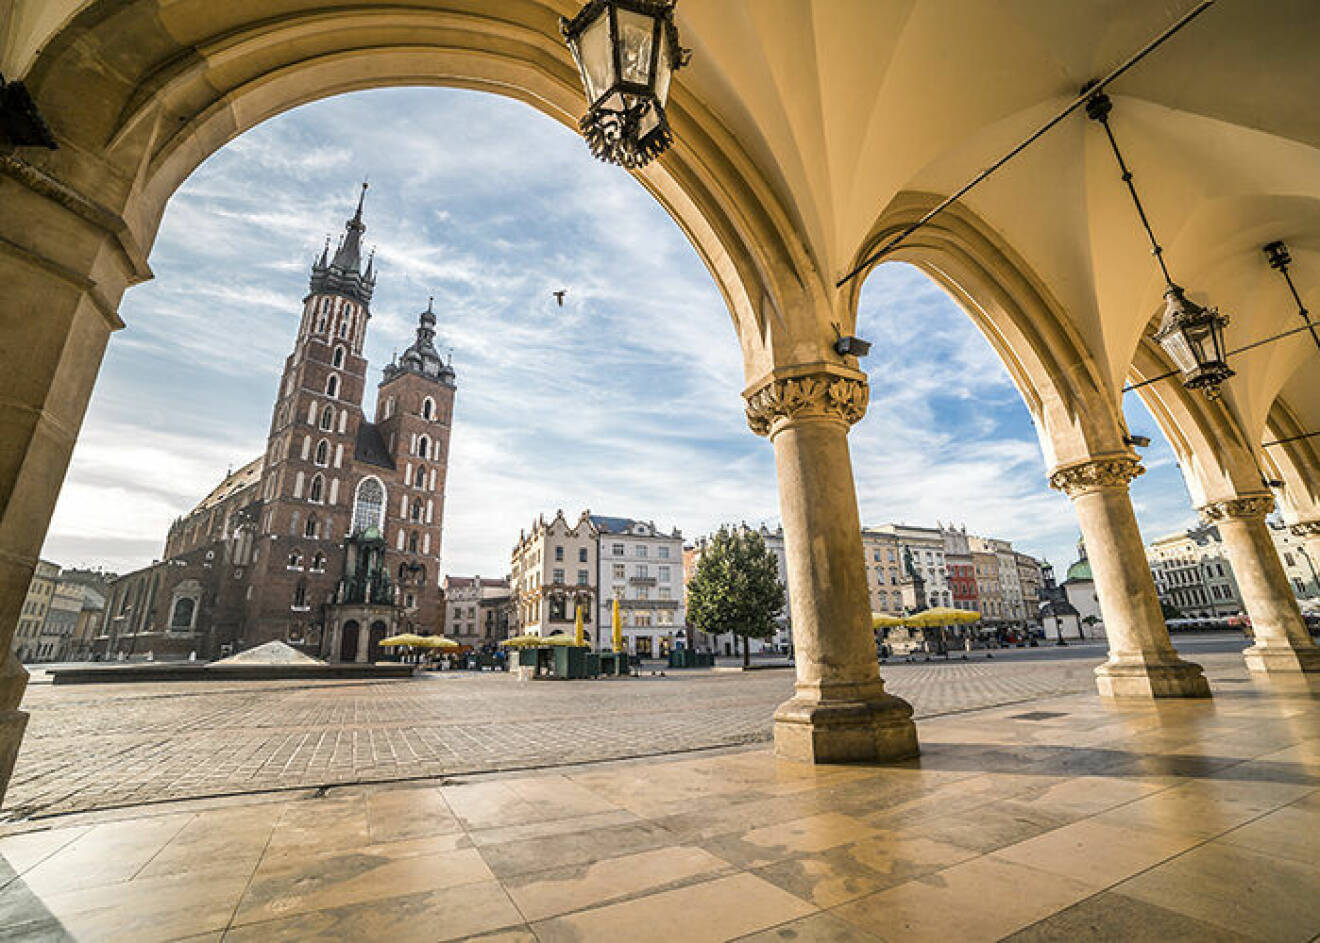 Krakow i Polen lockar många svenskar i år